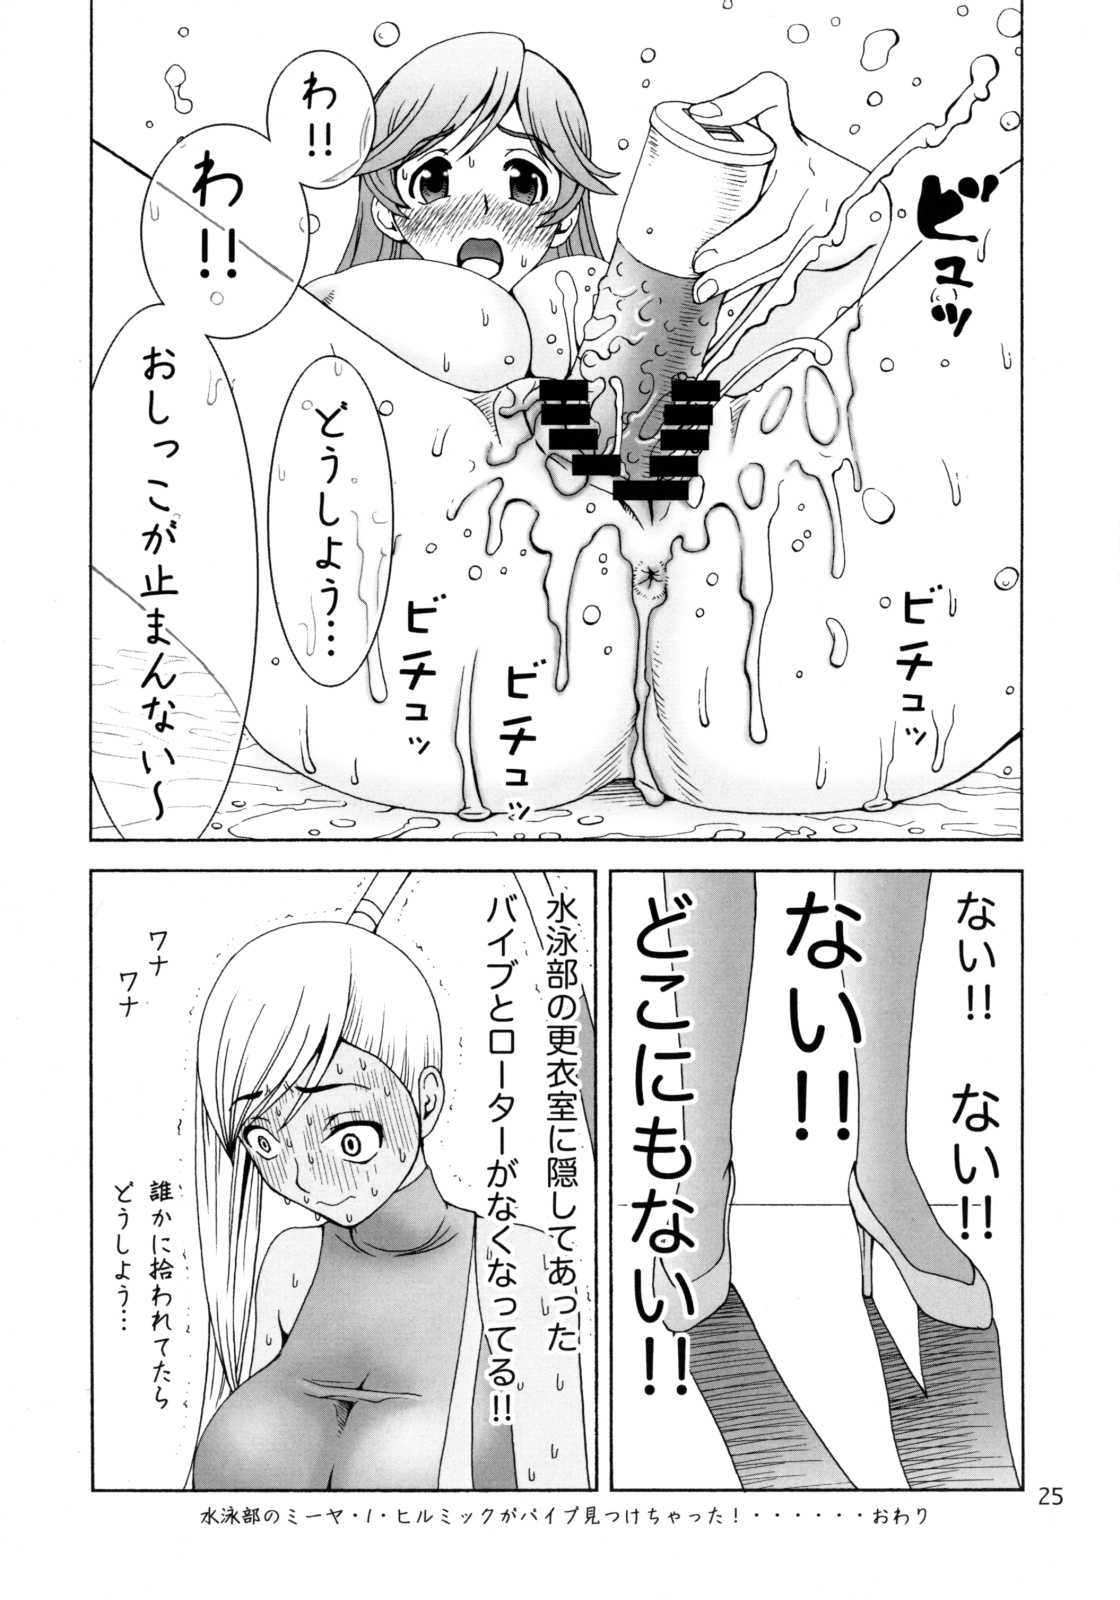 (SC40) [Narrow Cats] Villetta Sensei ga Ushirokara Zenkara Yarareteru! (Code Geass) (サンクリ40) [Narrow Cats] ヴィレッタ先生が後ろから前からヤられてる! (コードギアス 反逆のルルーシュ)